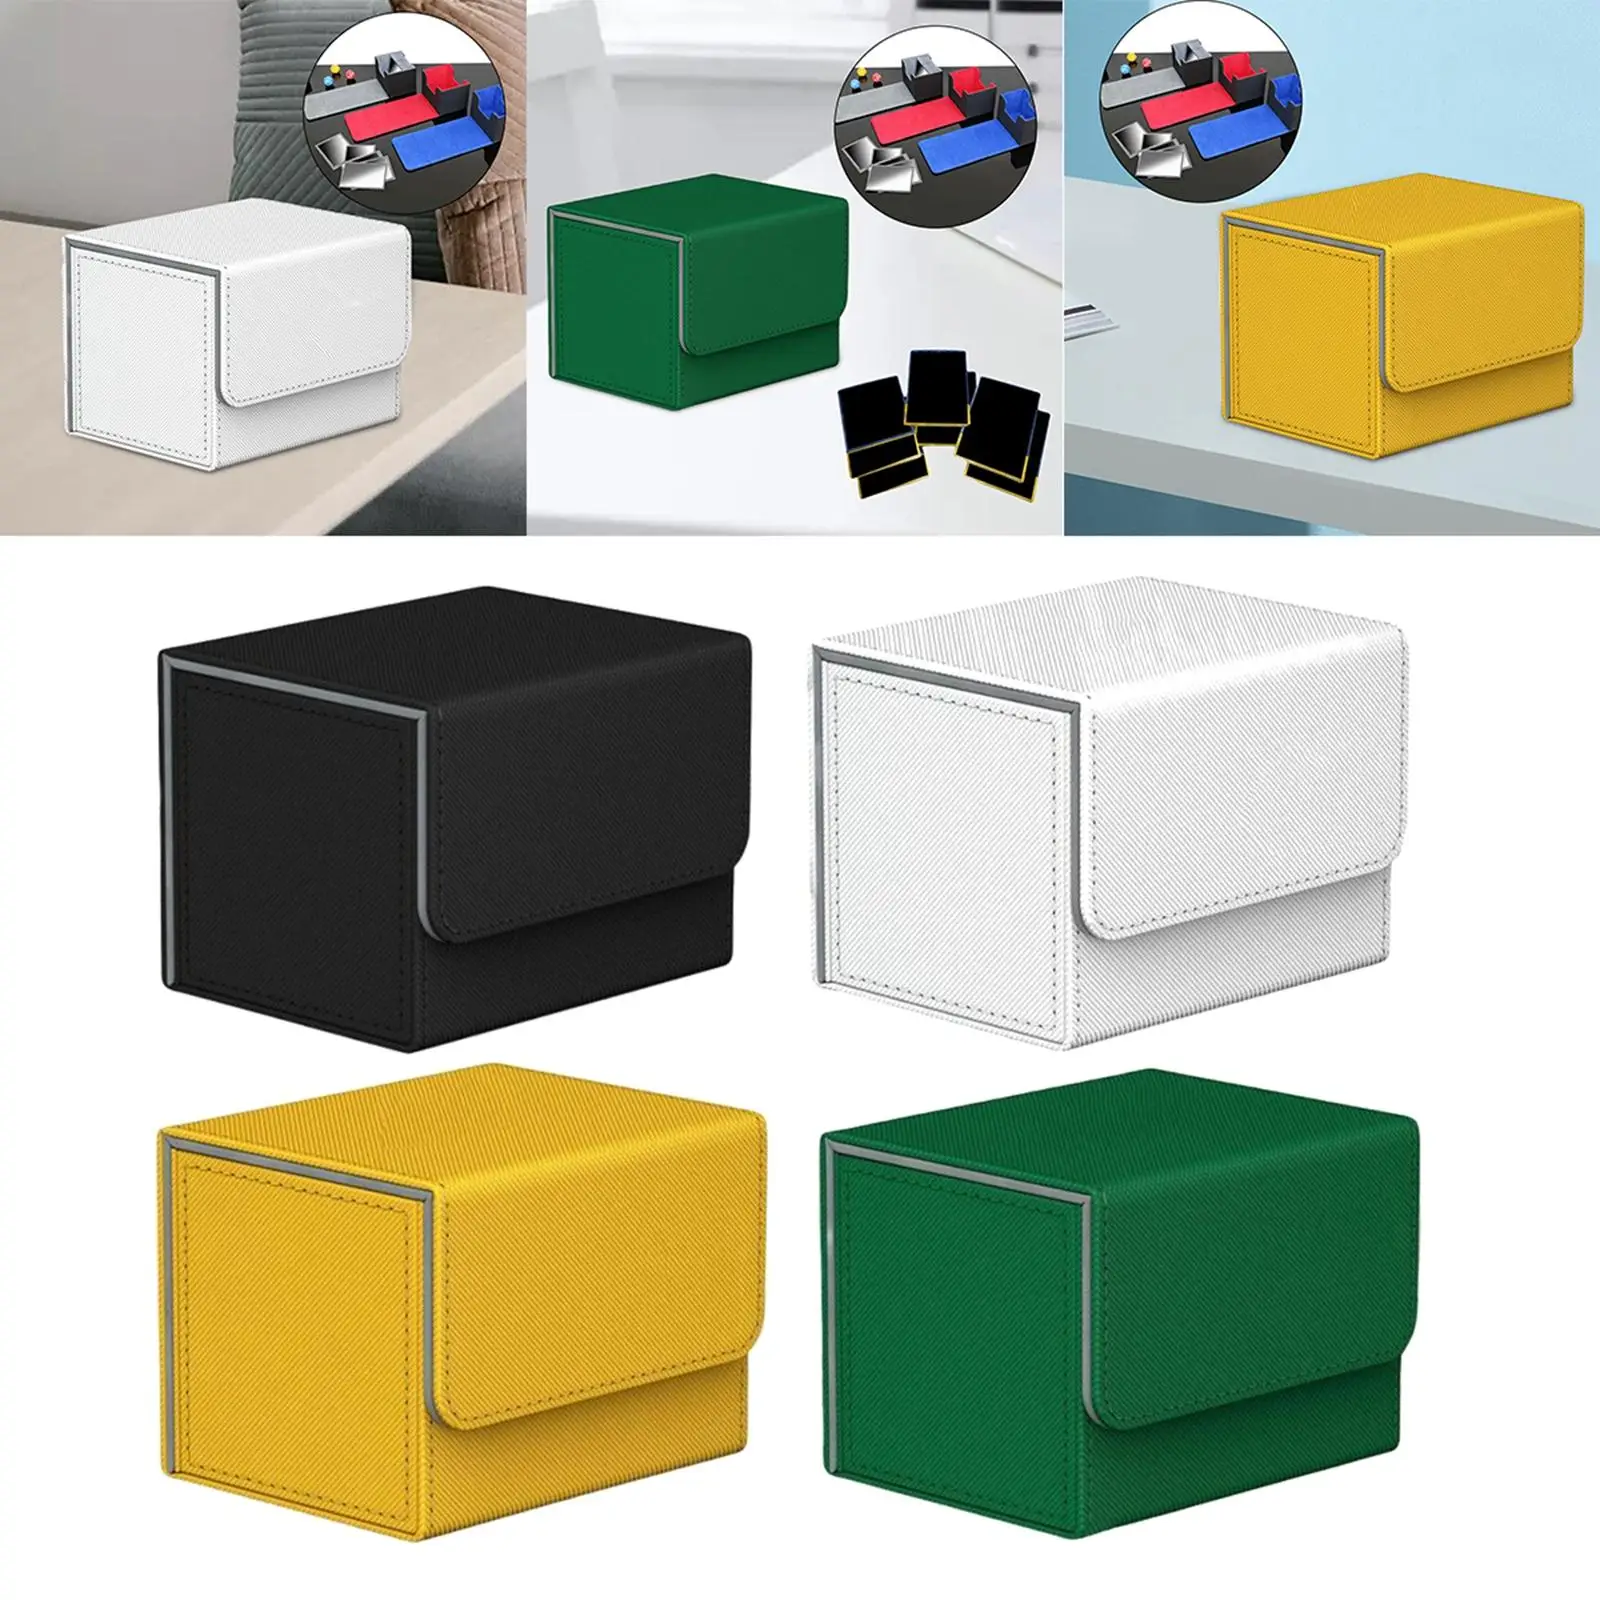 Card Deck Box Organizer Storage Holder Standard Container Display